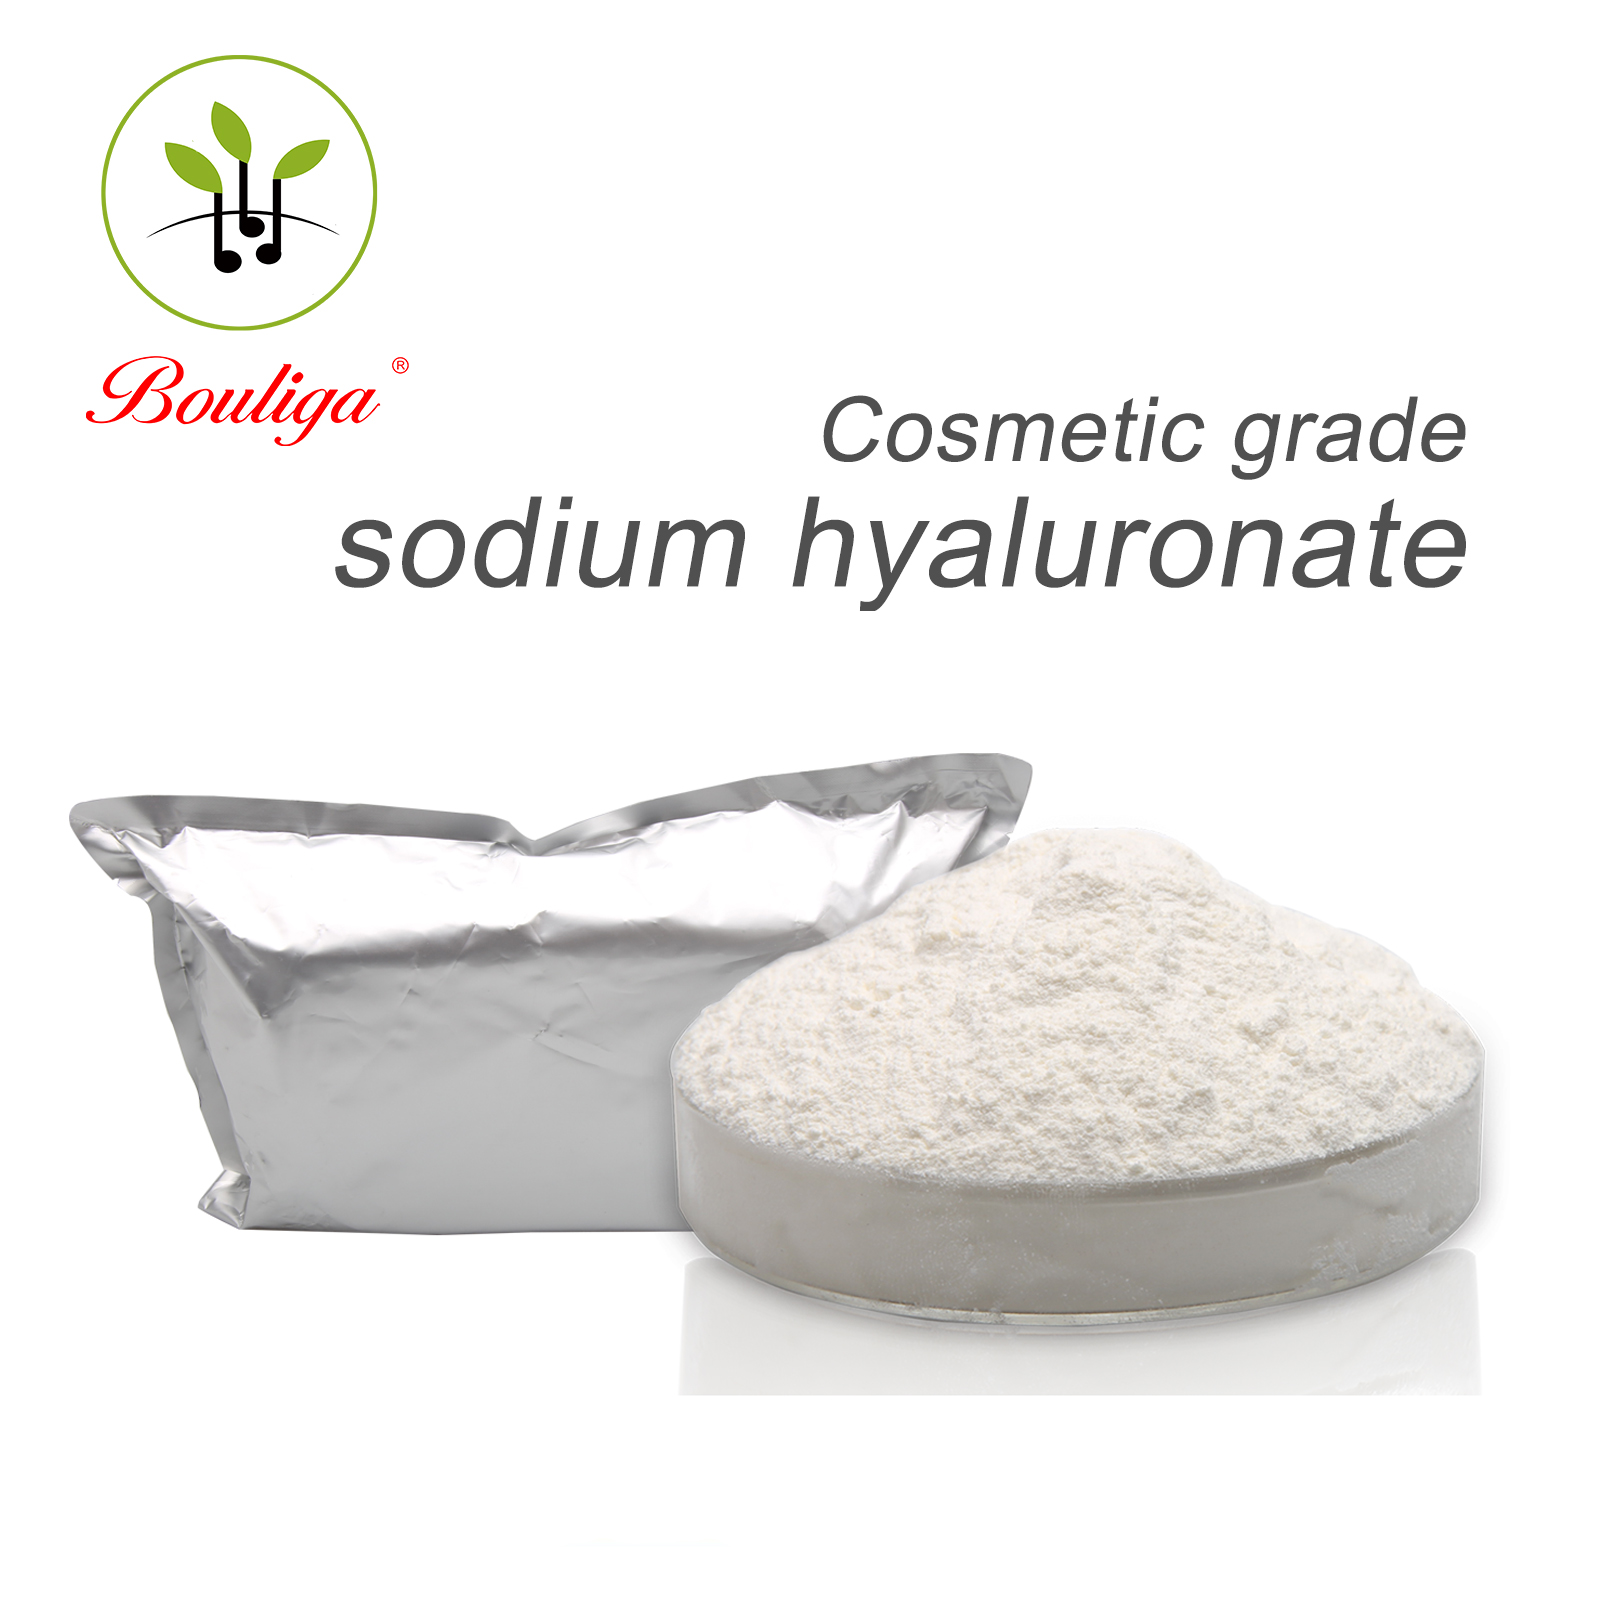 Sodium Hyaluronate Powder Cosmetic Grade Anti-aging Raw Material